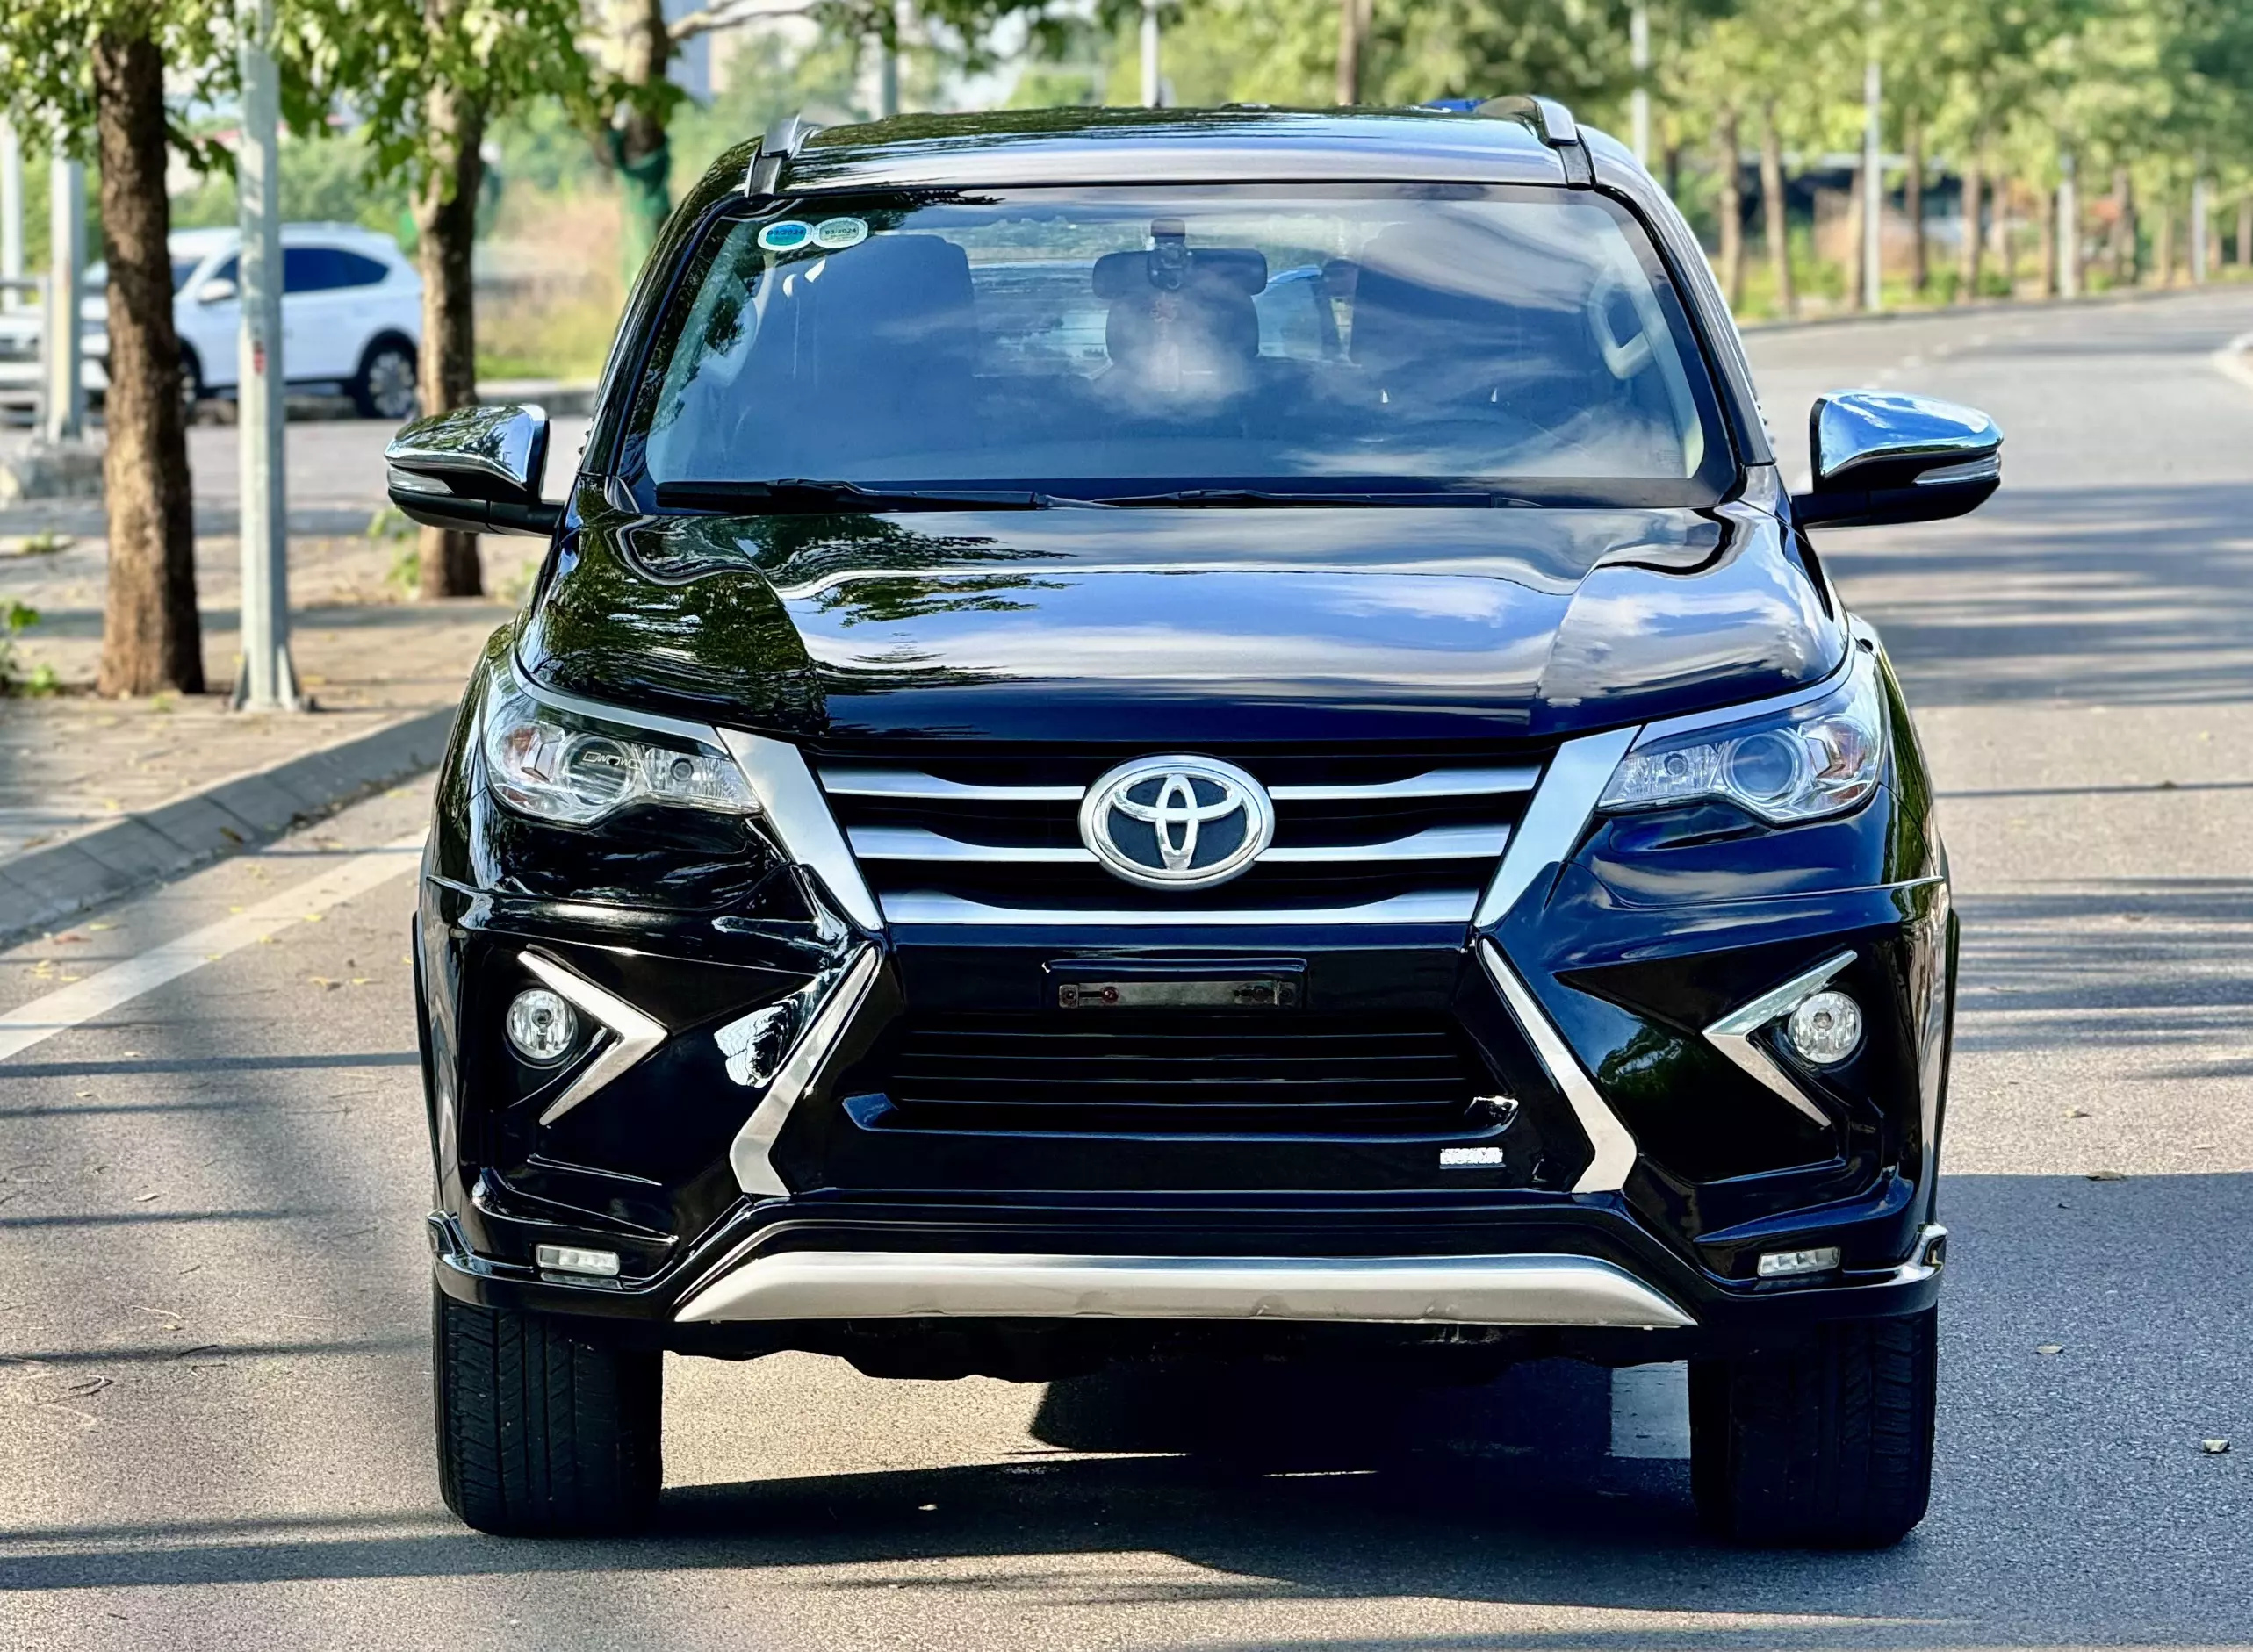 Toyota Fortuner 2017 - CẦN BÁN CHIẾC XE FORTUNER 2017 TẠI NAM TỪ LIÊM - TP. HÀ NỘI 